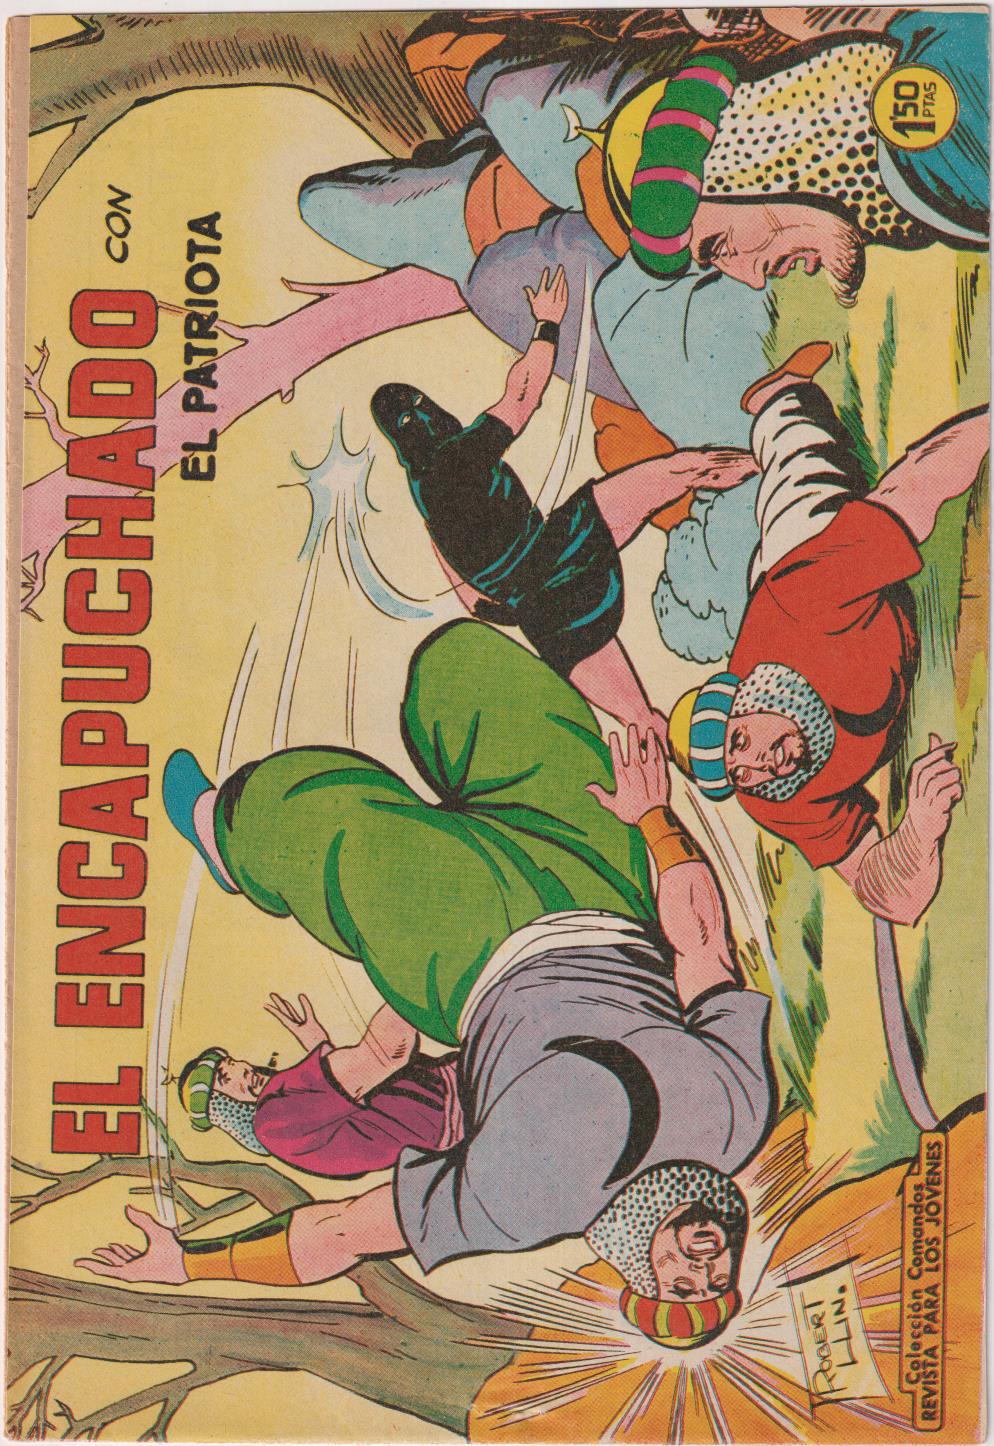 El Patriota. Colección Completa, 18 ejemplares. Valenciana 1960. MUY ESCASA ASÍ